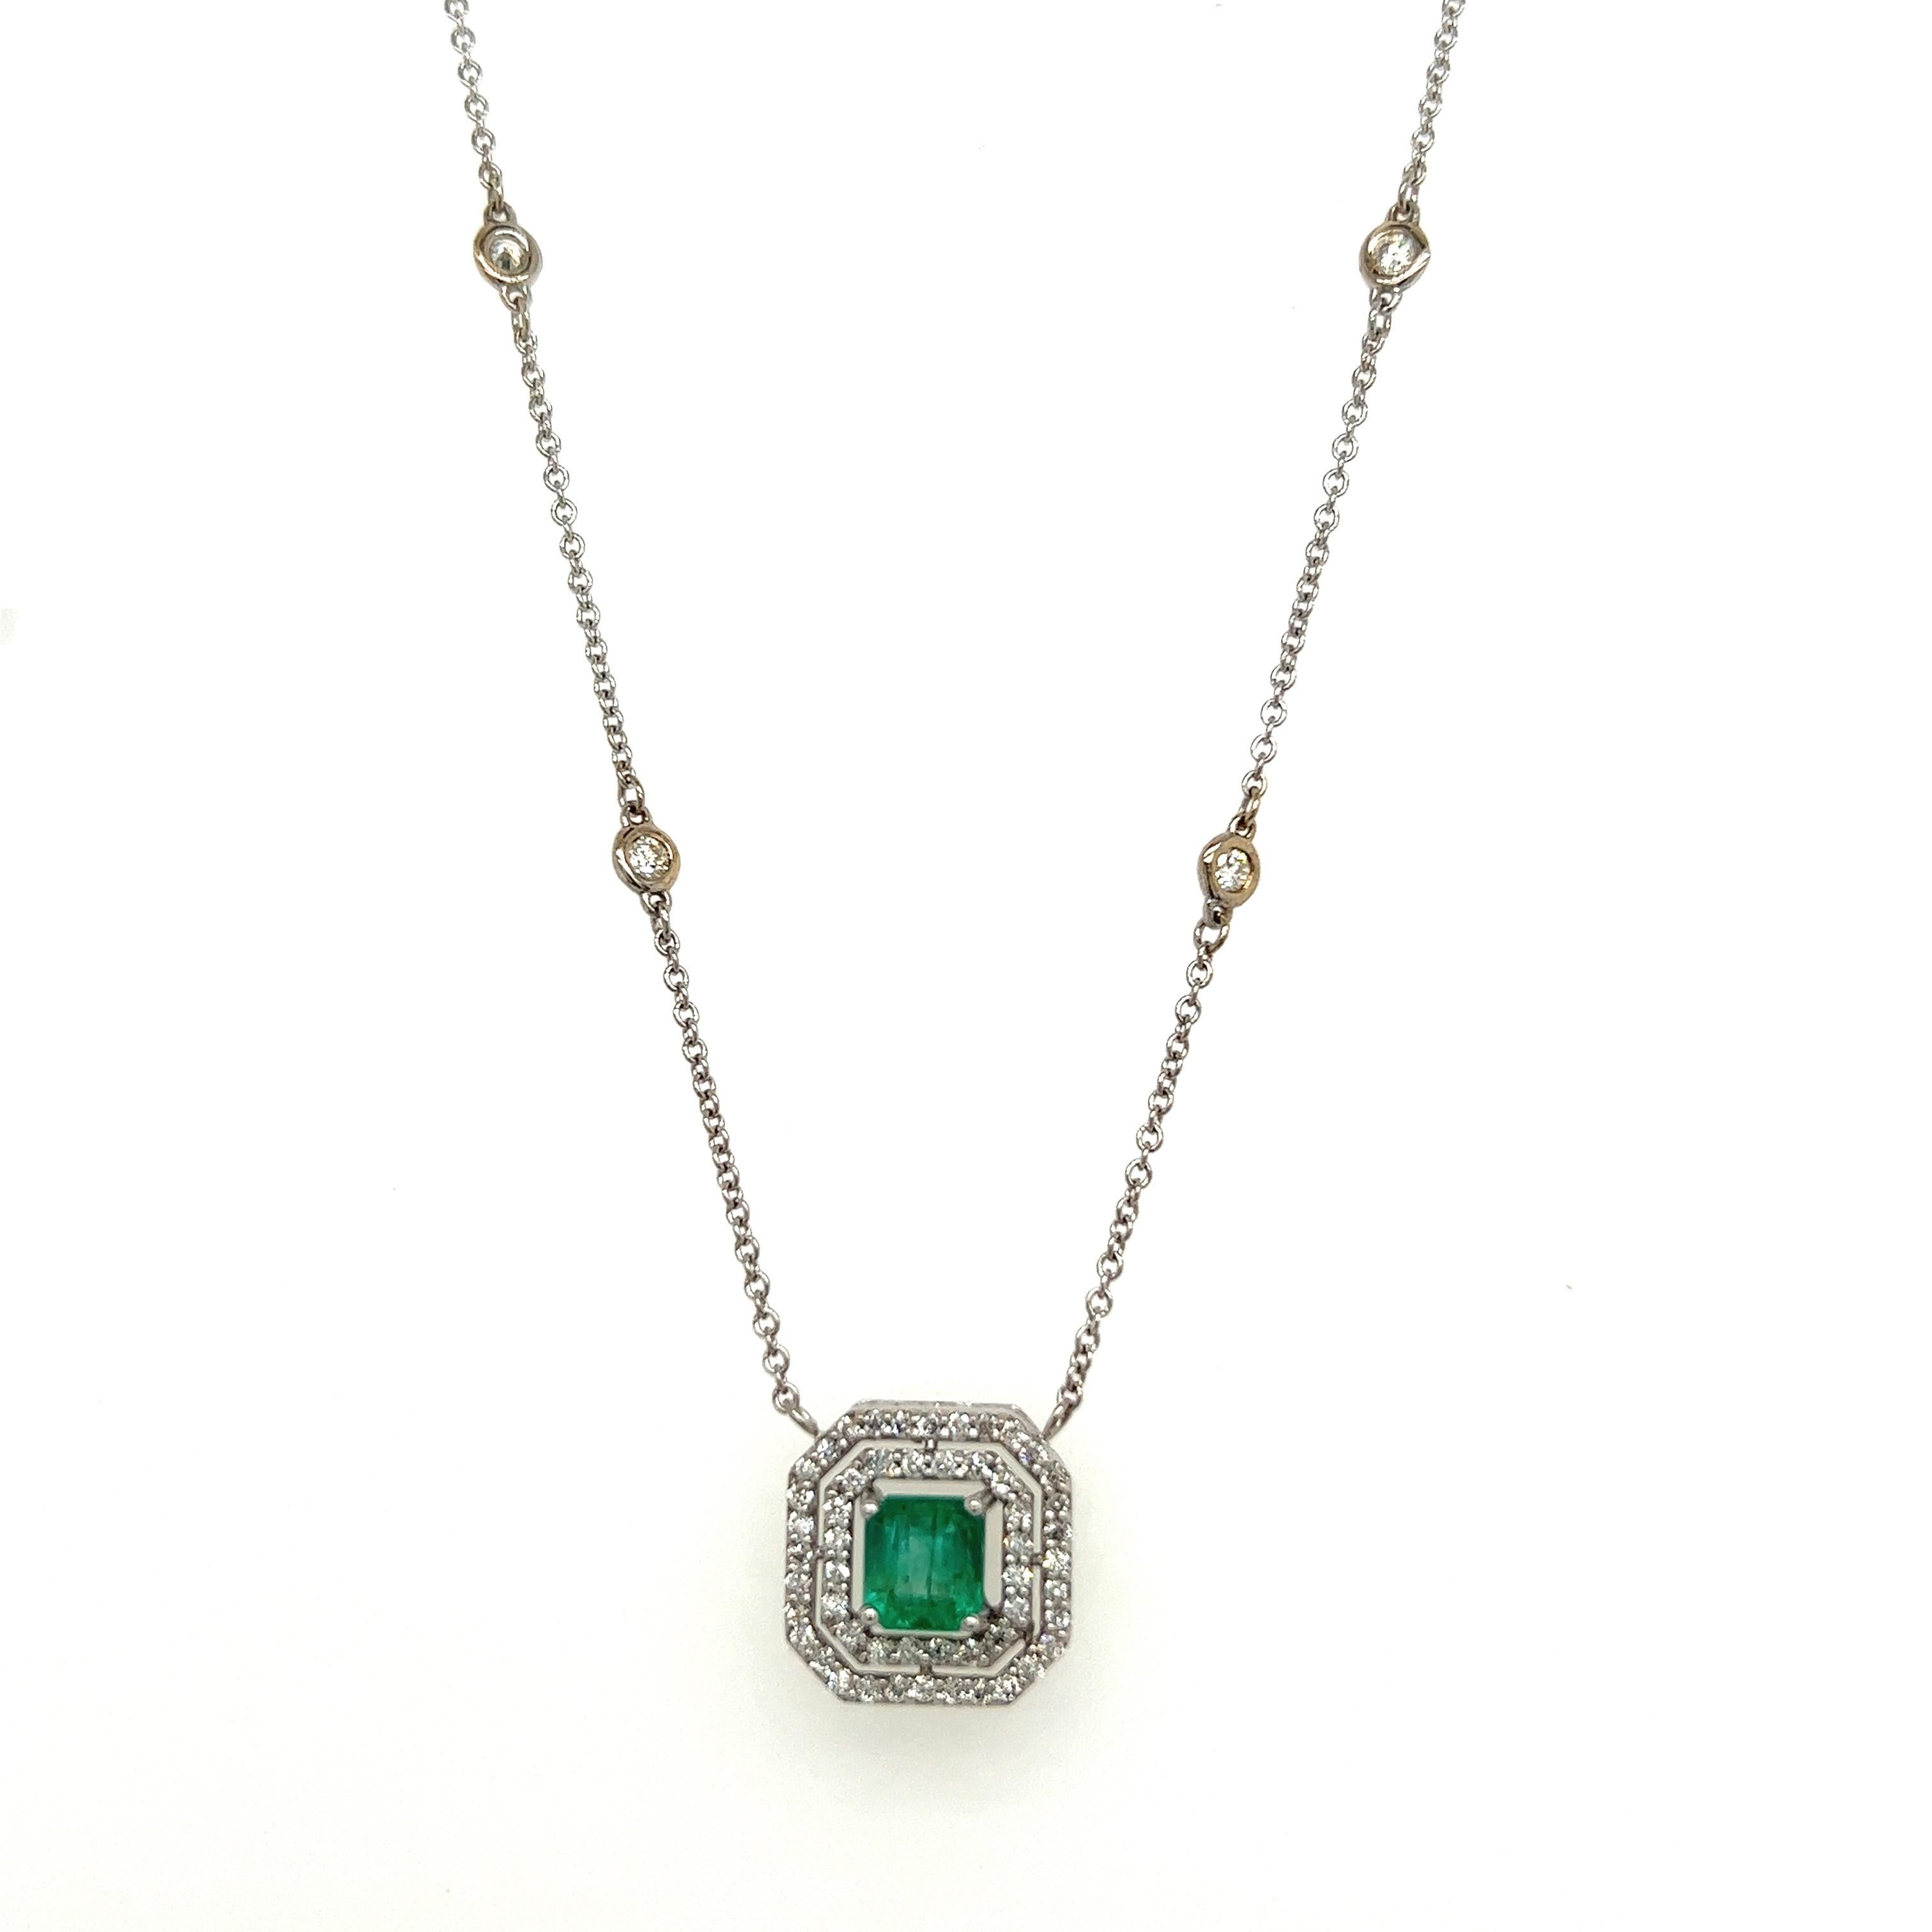 Emerald Cut Natural Emerald Diamond Halo Pendant With Chain 18